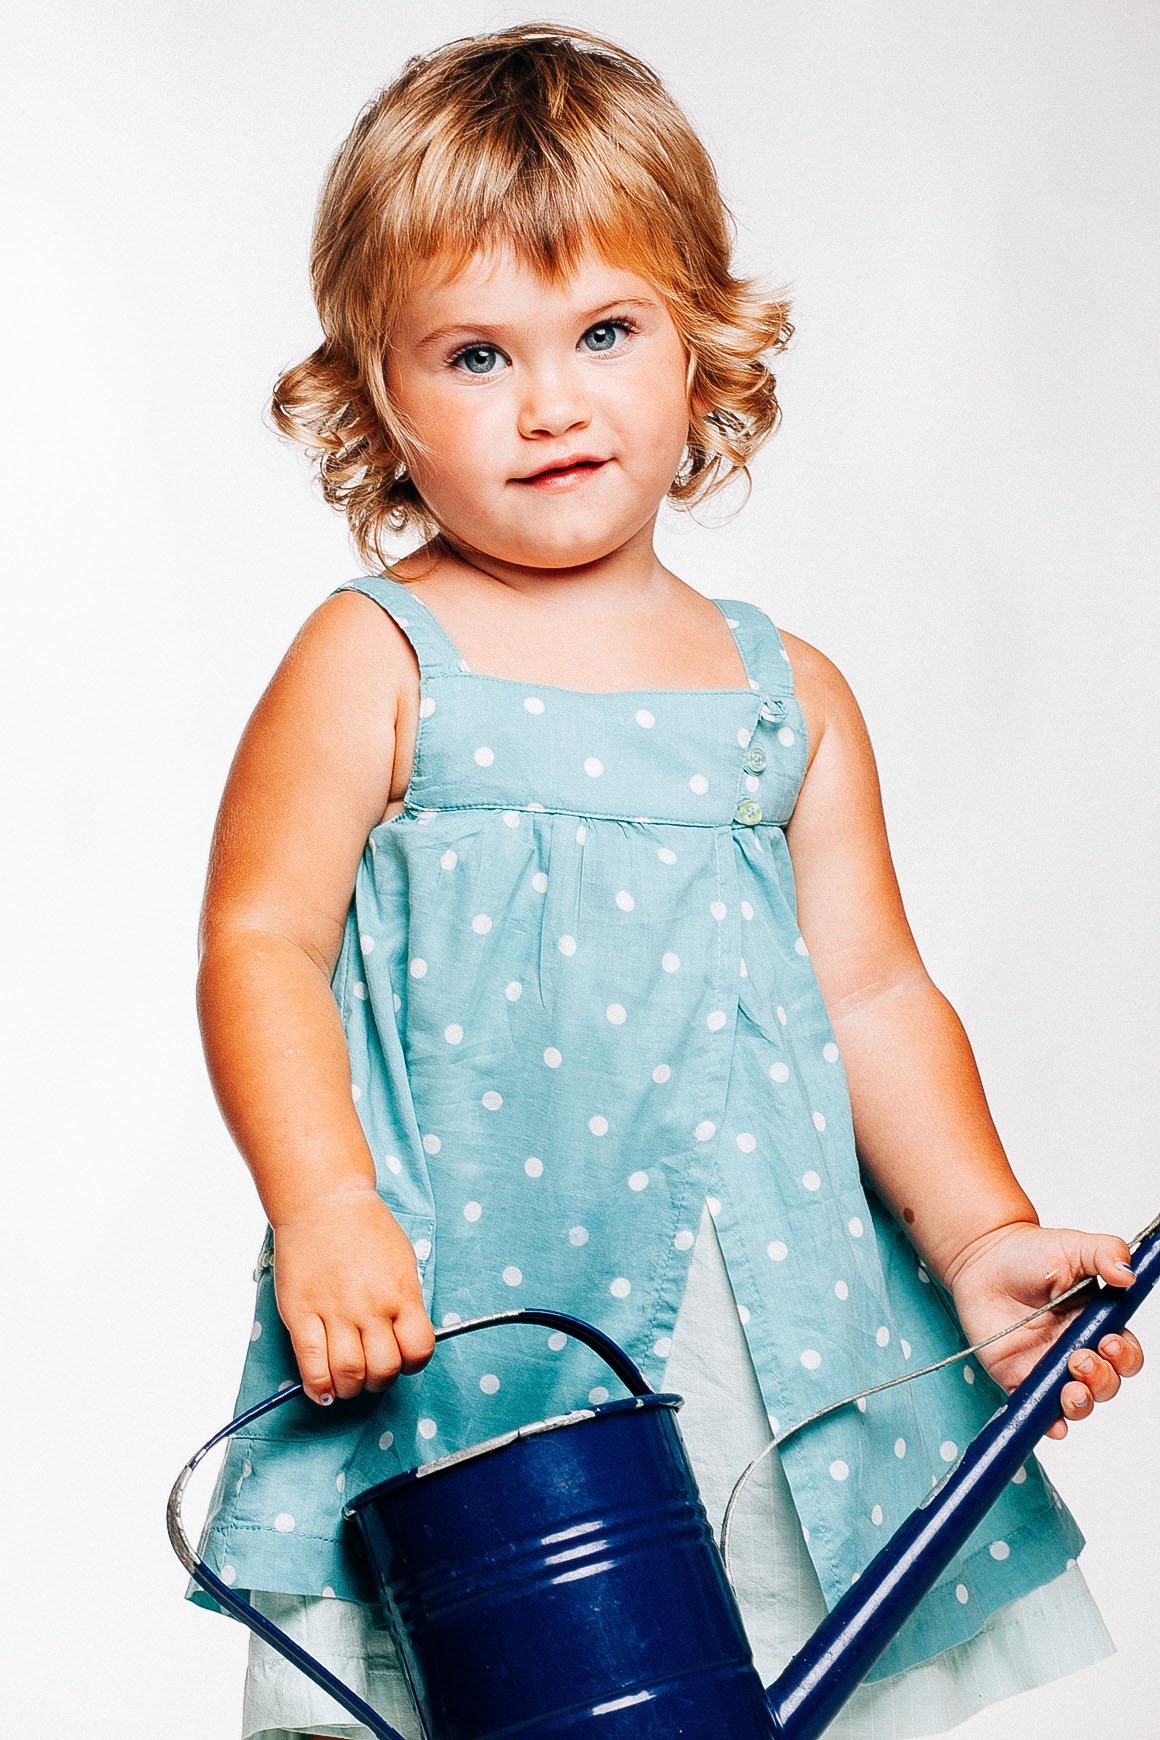 niña con vestido azul en sesion de fotos profesional